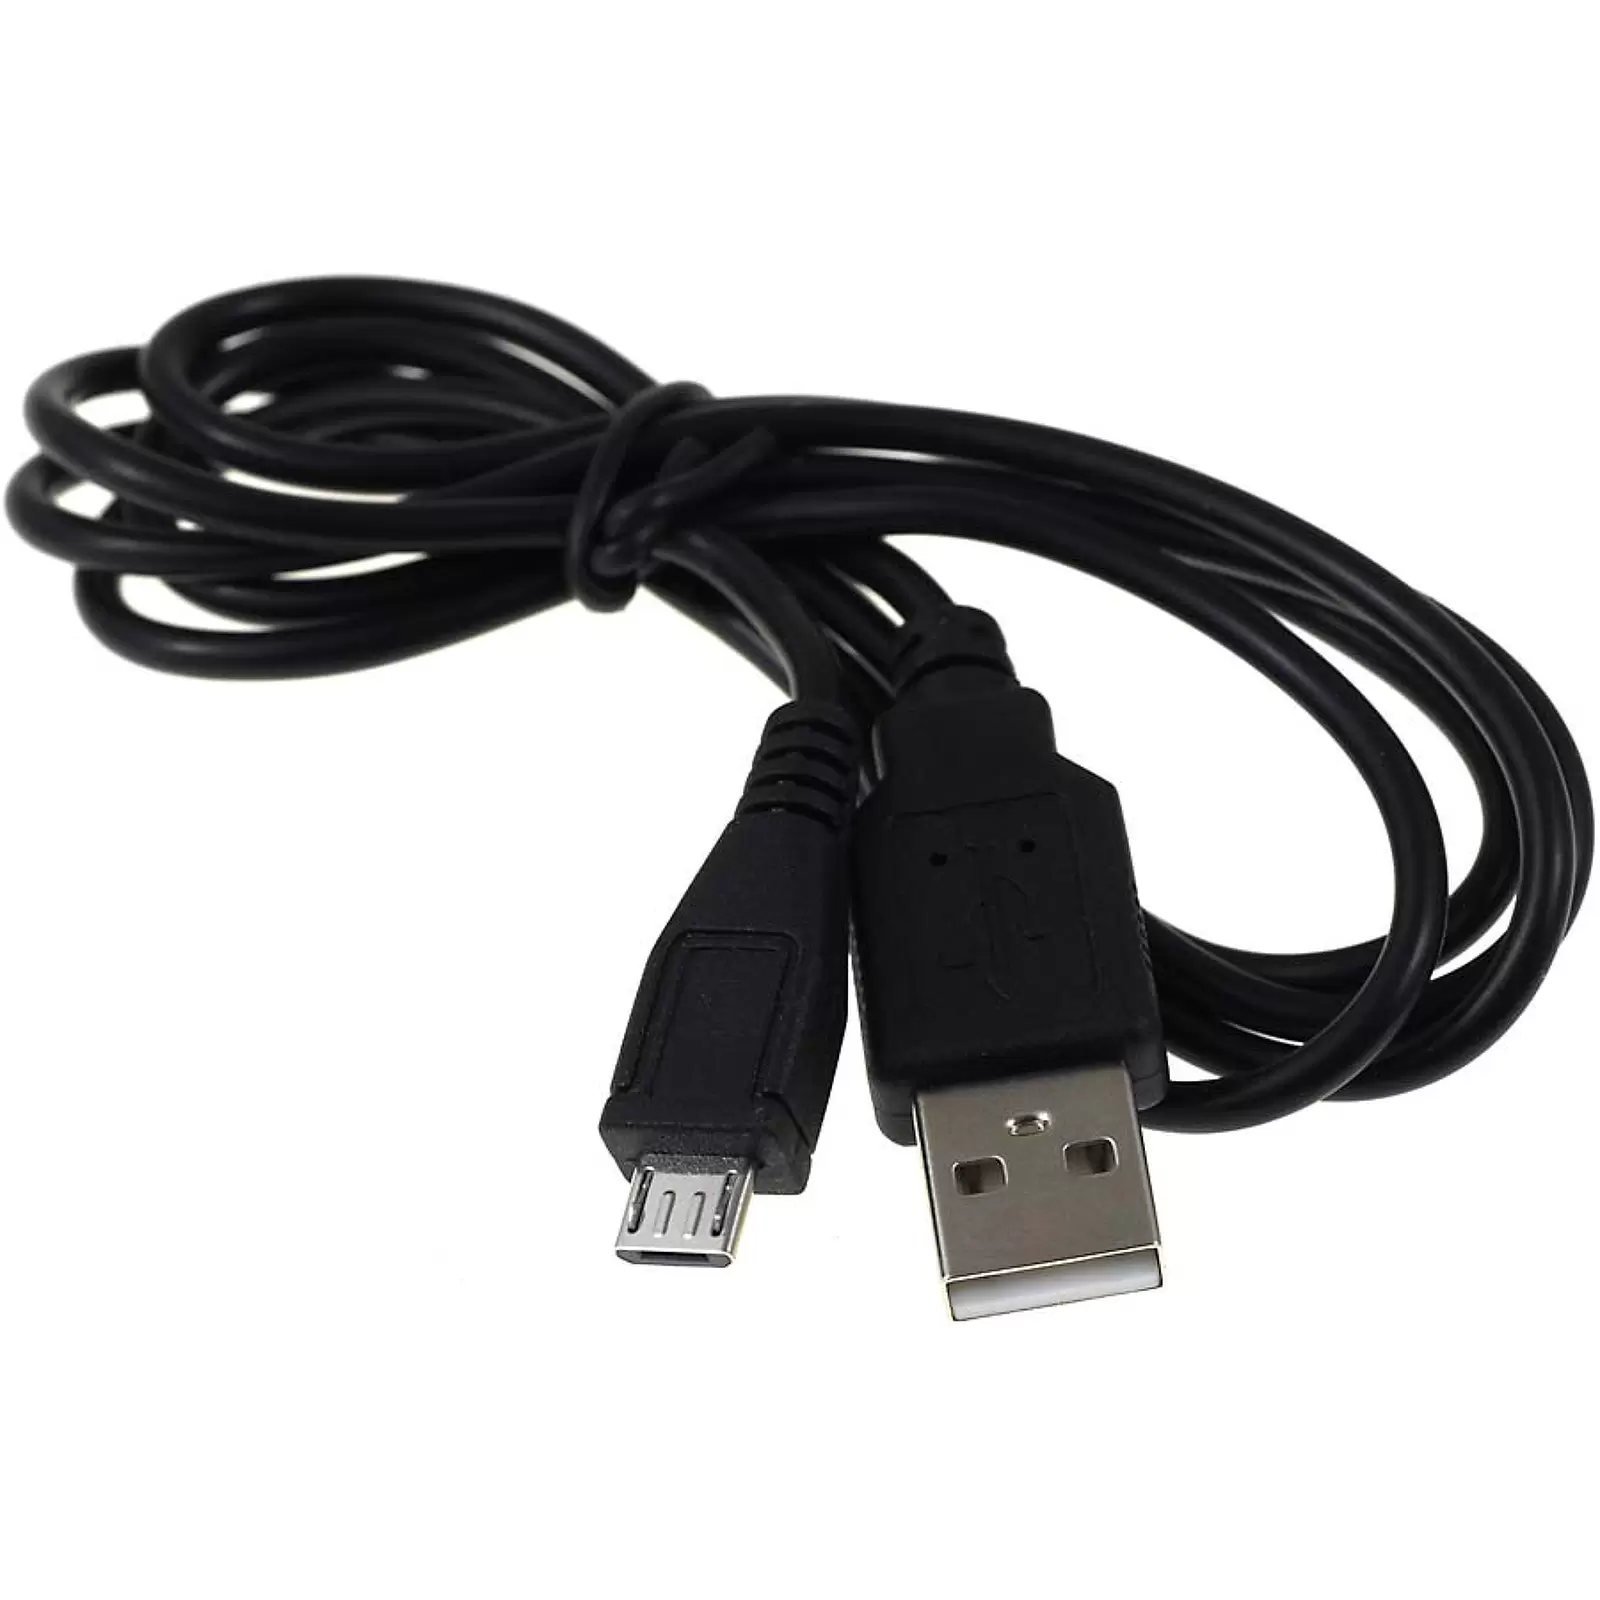 Verbindungskabel Micro USB auf USB für Android, 1m, Samsung, HTC, Motorla, Blackberry, Sony,Nokia,HP